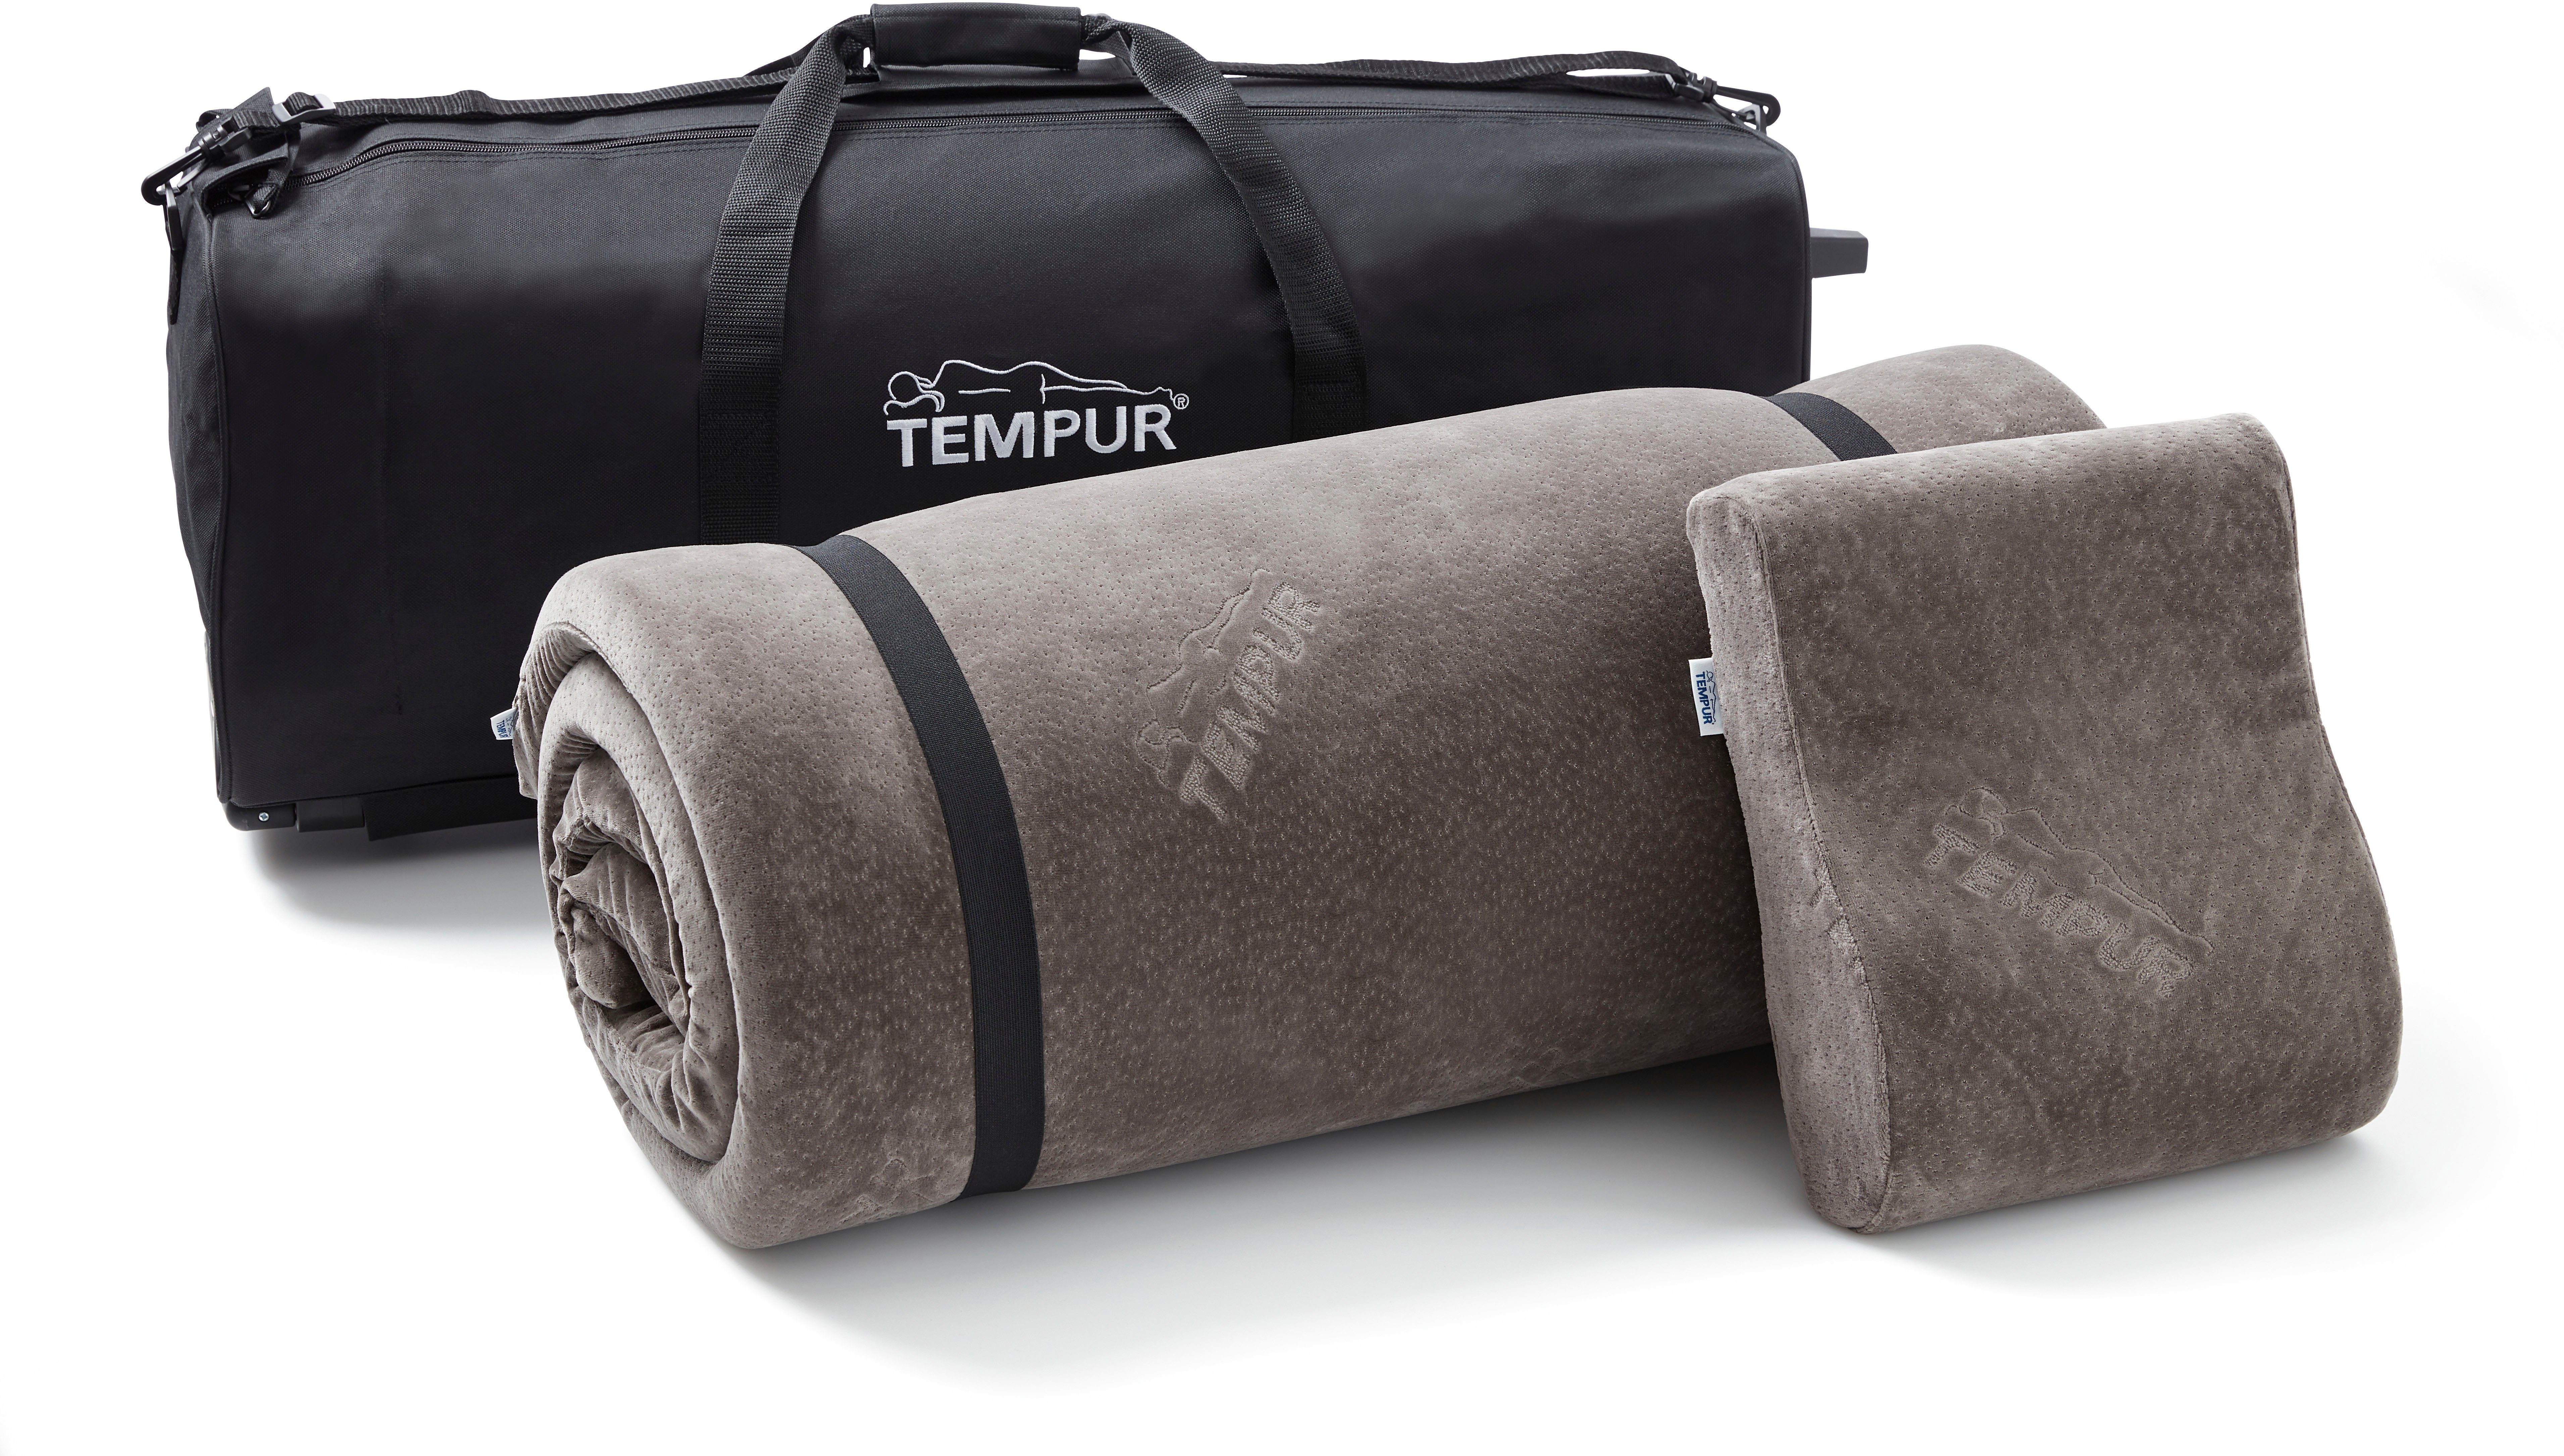 Kopfkissen + Baumwolle, Bezug: 25% TEMPUR® unterwegs 75% Schlafsystem Tempur, Reiseset, tragbare Topper, für Polyester